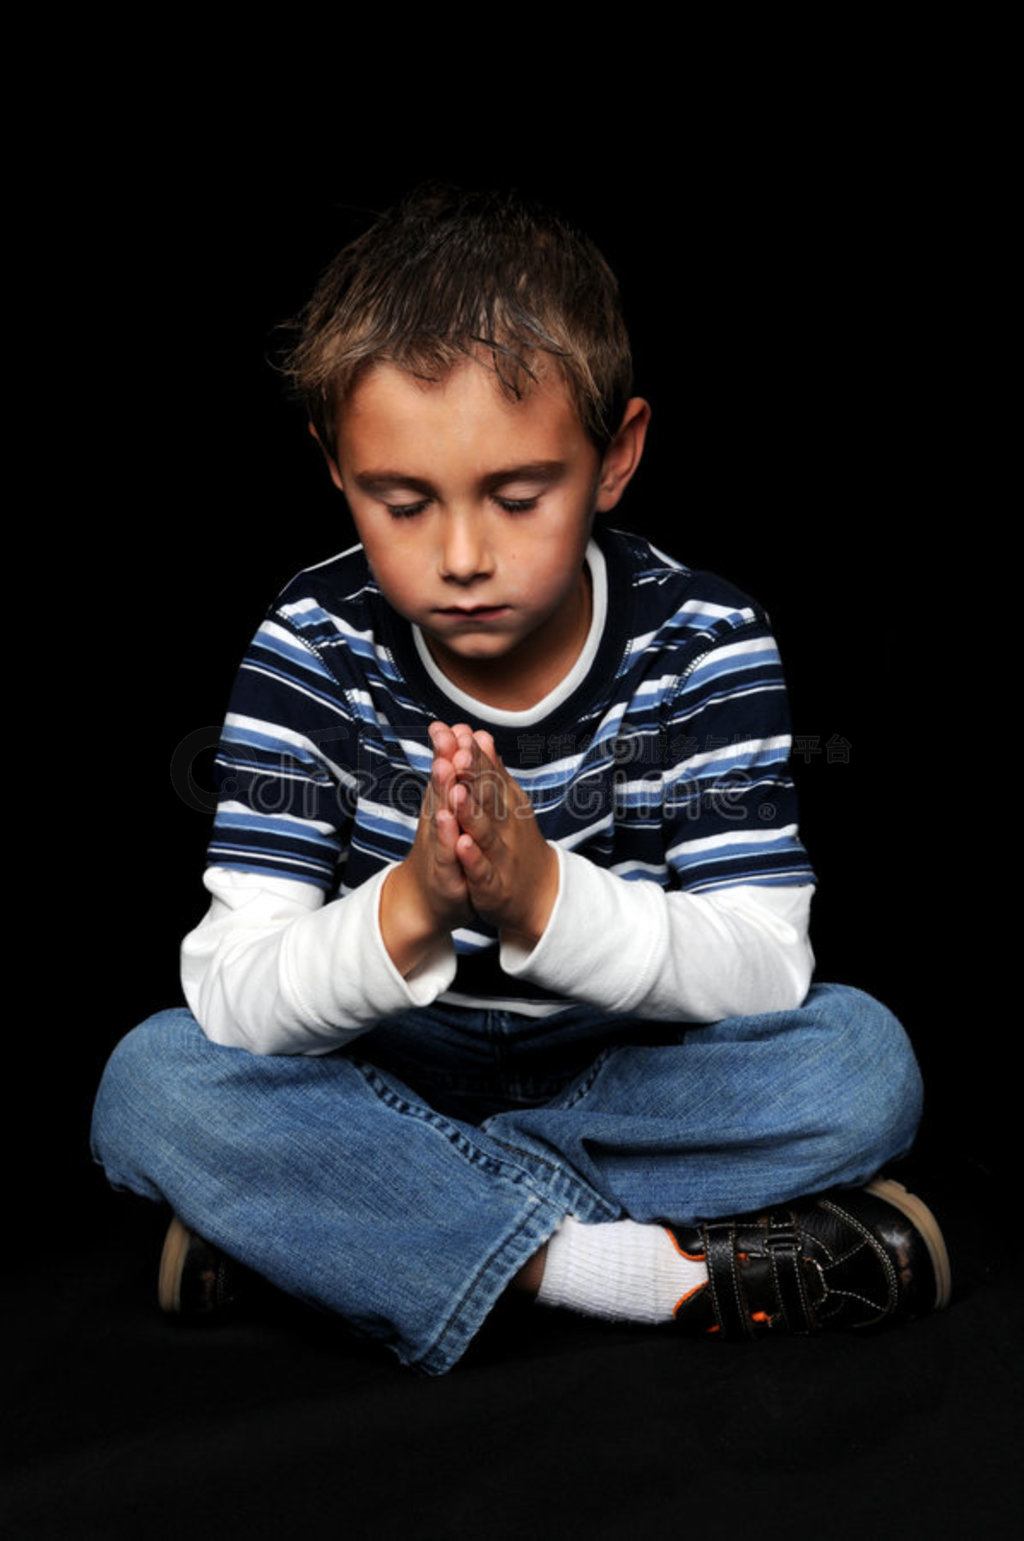 男孩祈祷 库存照片. 图片 包括有 信仰, 精神, 教会, 信念, 相信, 耶稣, 宗教信仰, 上帝, 现有量 - 1120032